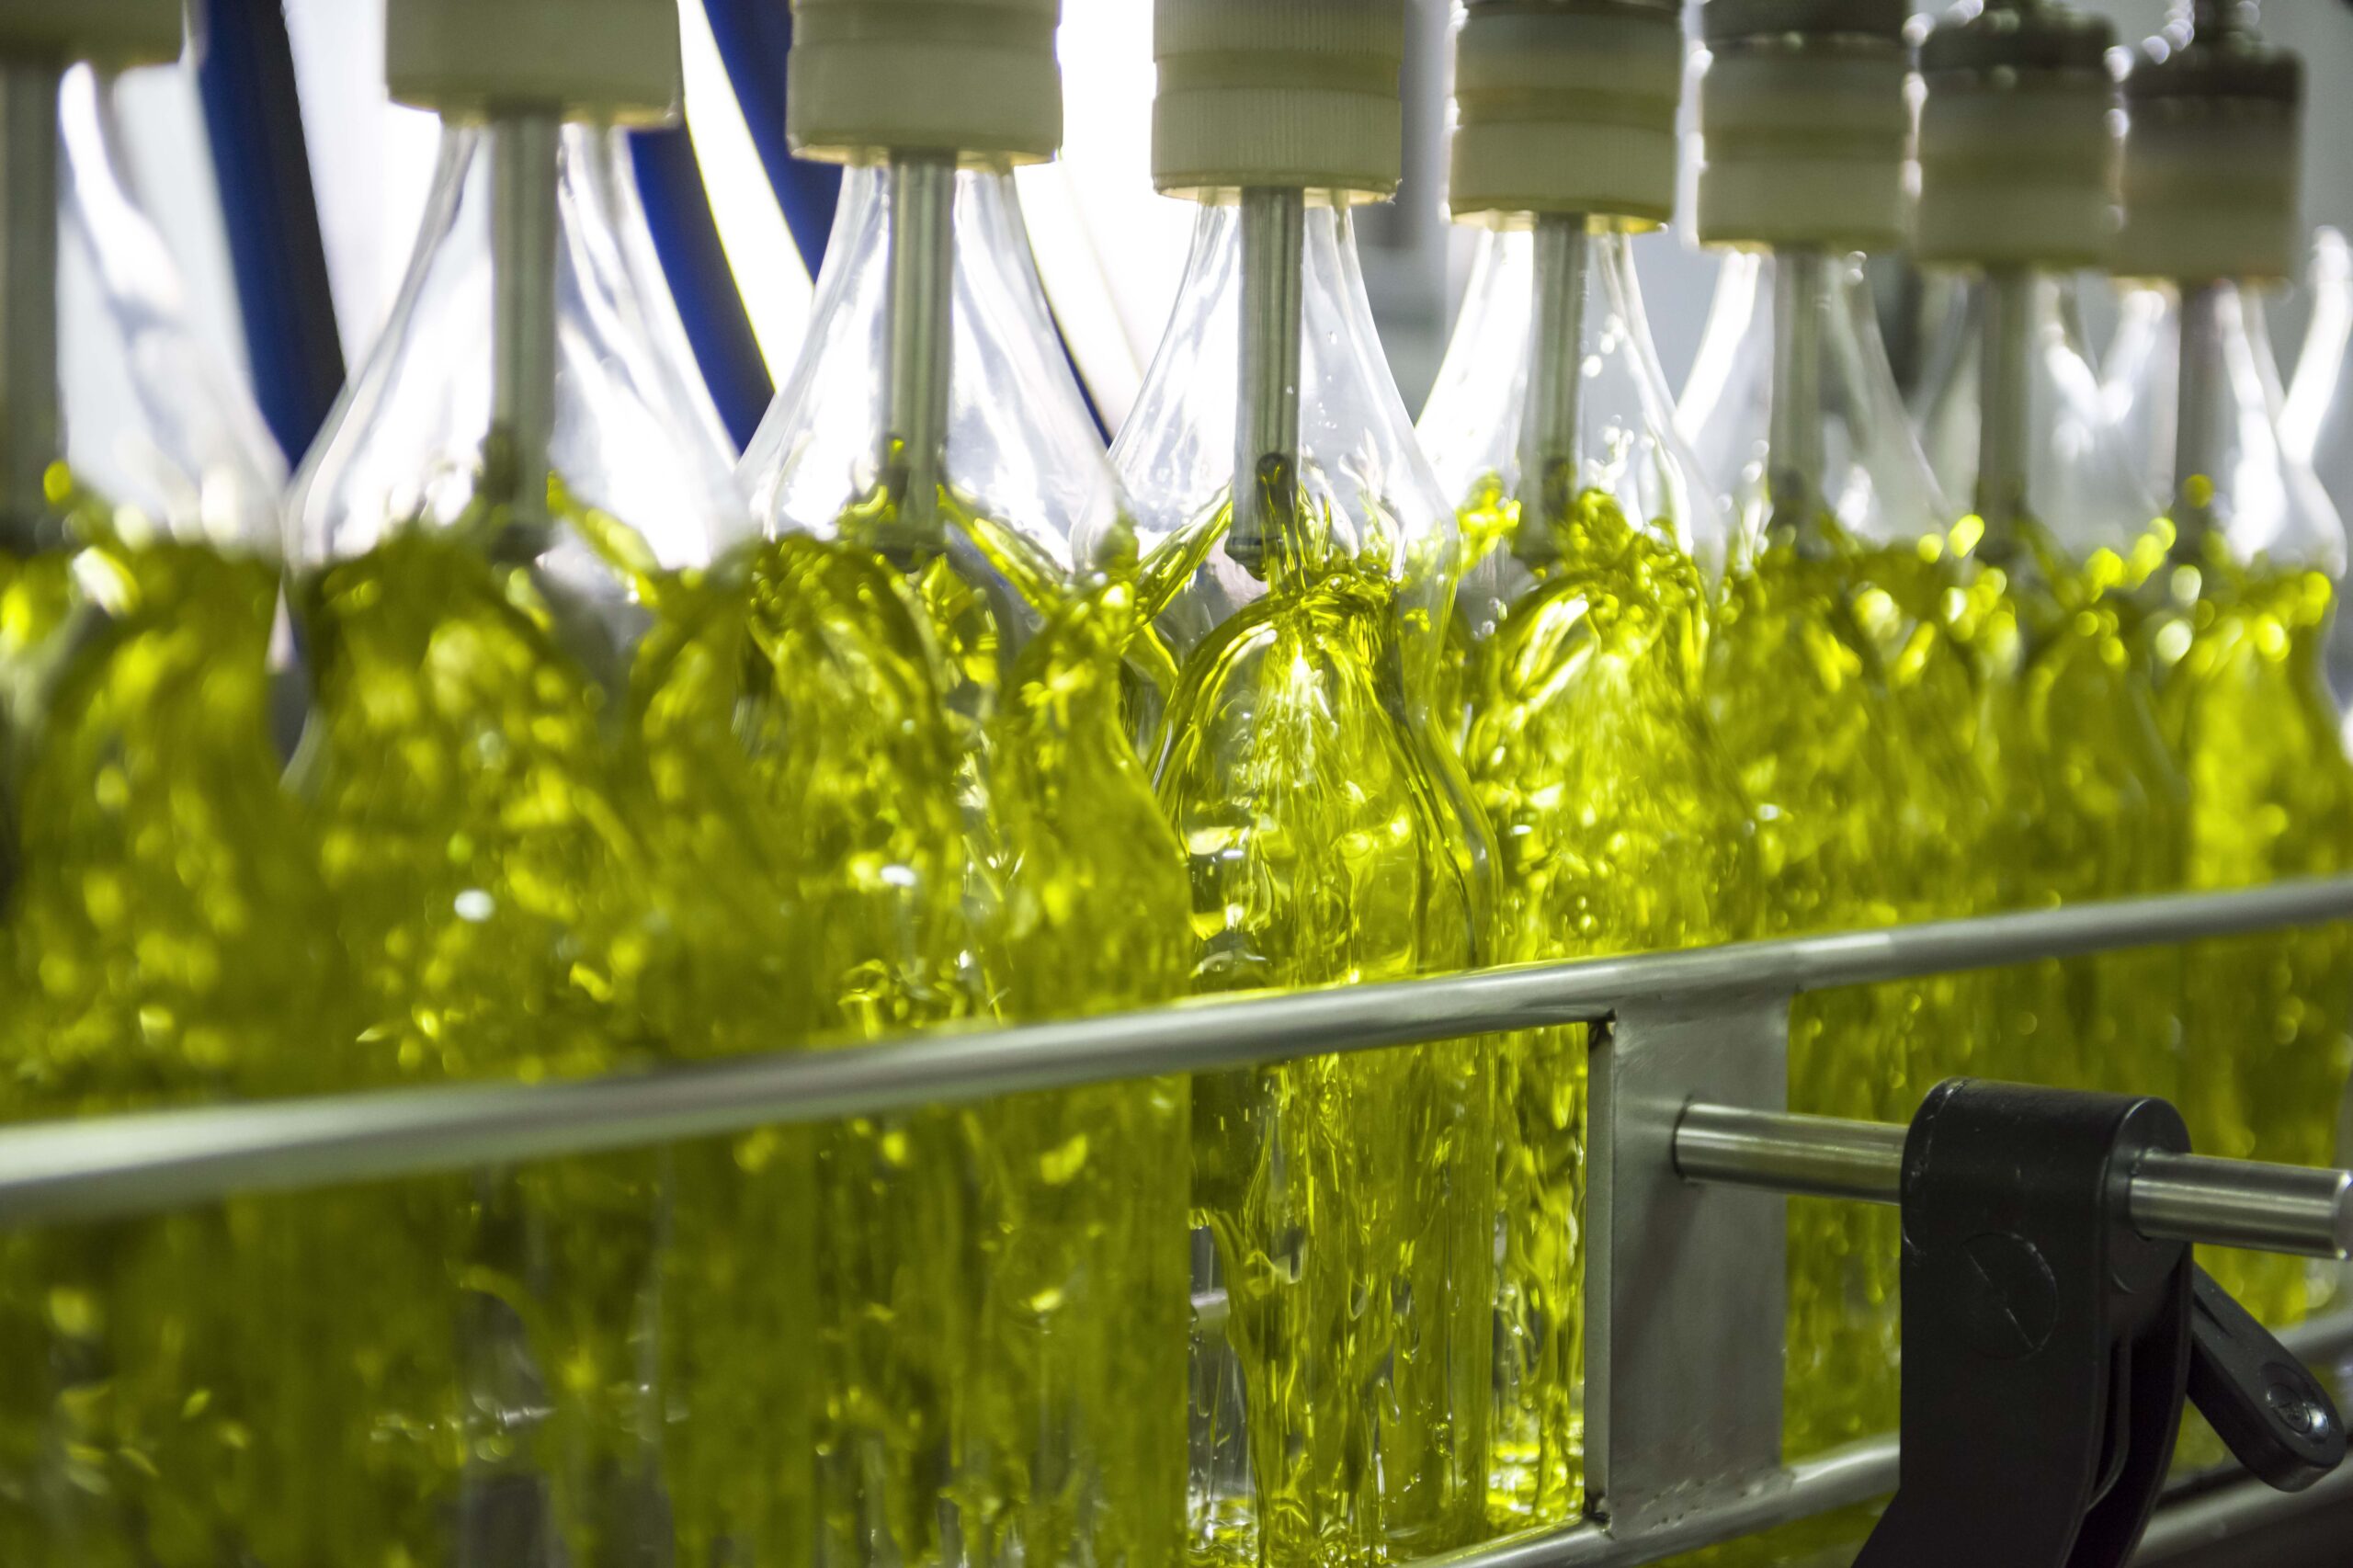 embotellado de aceite de oliva virgen Extra en la almazara de hacienda vadolivo